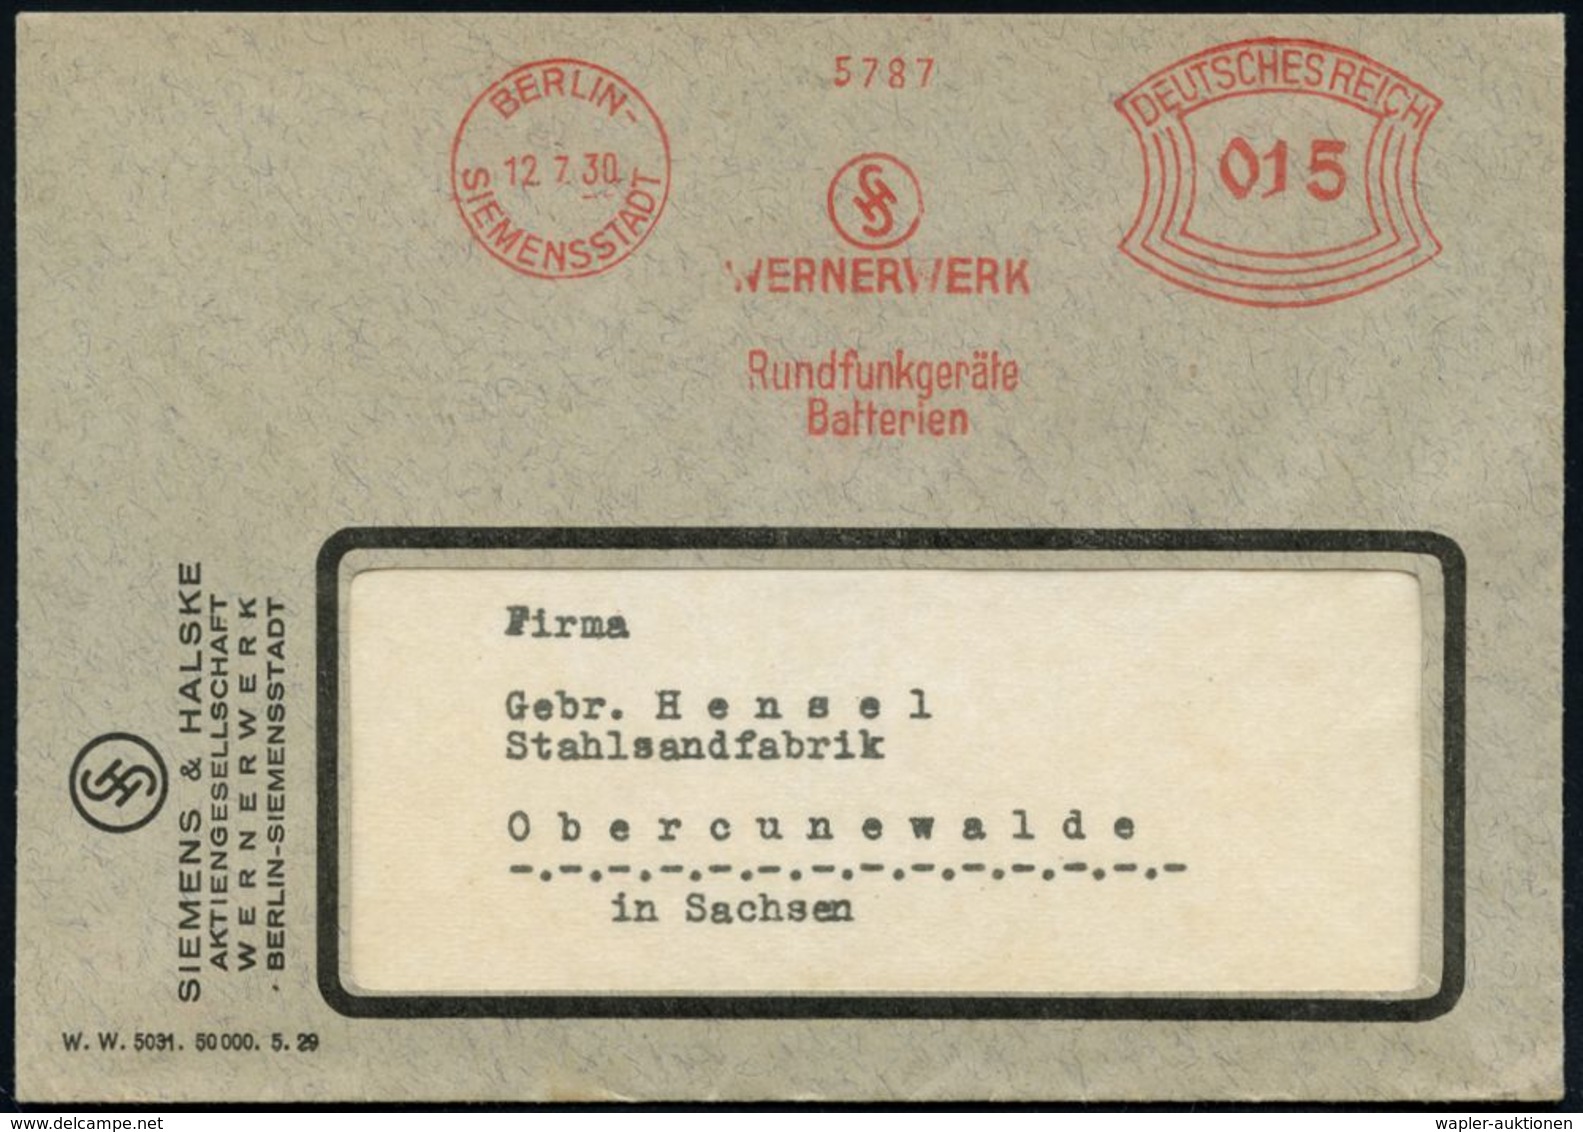 RADIO & RADIO-INDUSTRIE / APPARATE : BERLIN-/ SIEMENSSTADT/ WERNERWERK/ Rundfunkgeräte/ Batterien 1930 (12.7.) AFS (Mono - Non Classificati